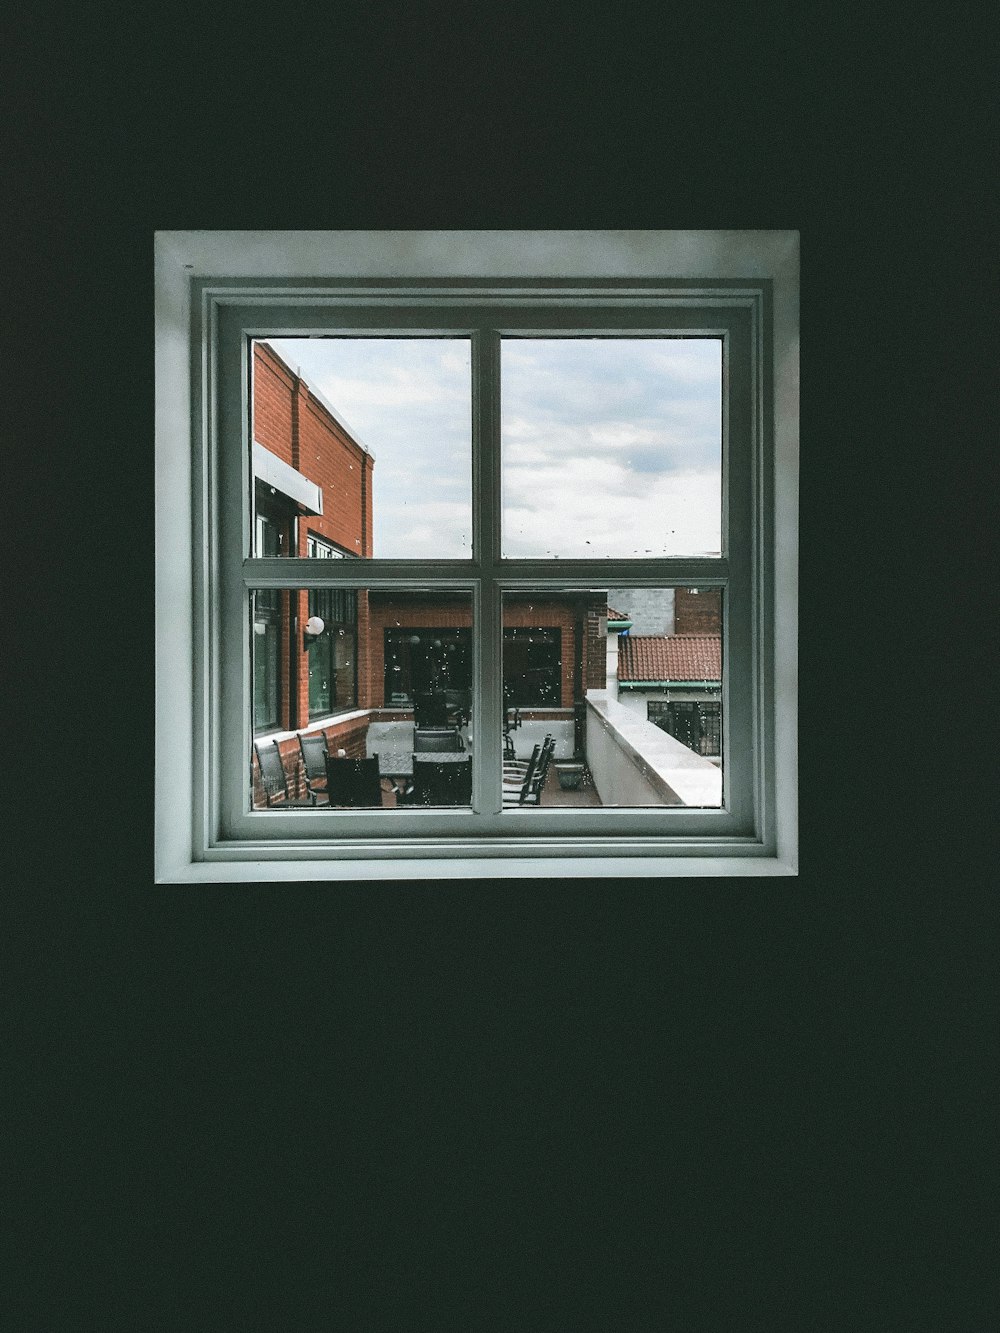 finestra di vetro incorniciata in legno bianco chiusa